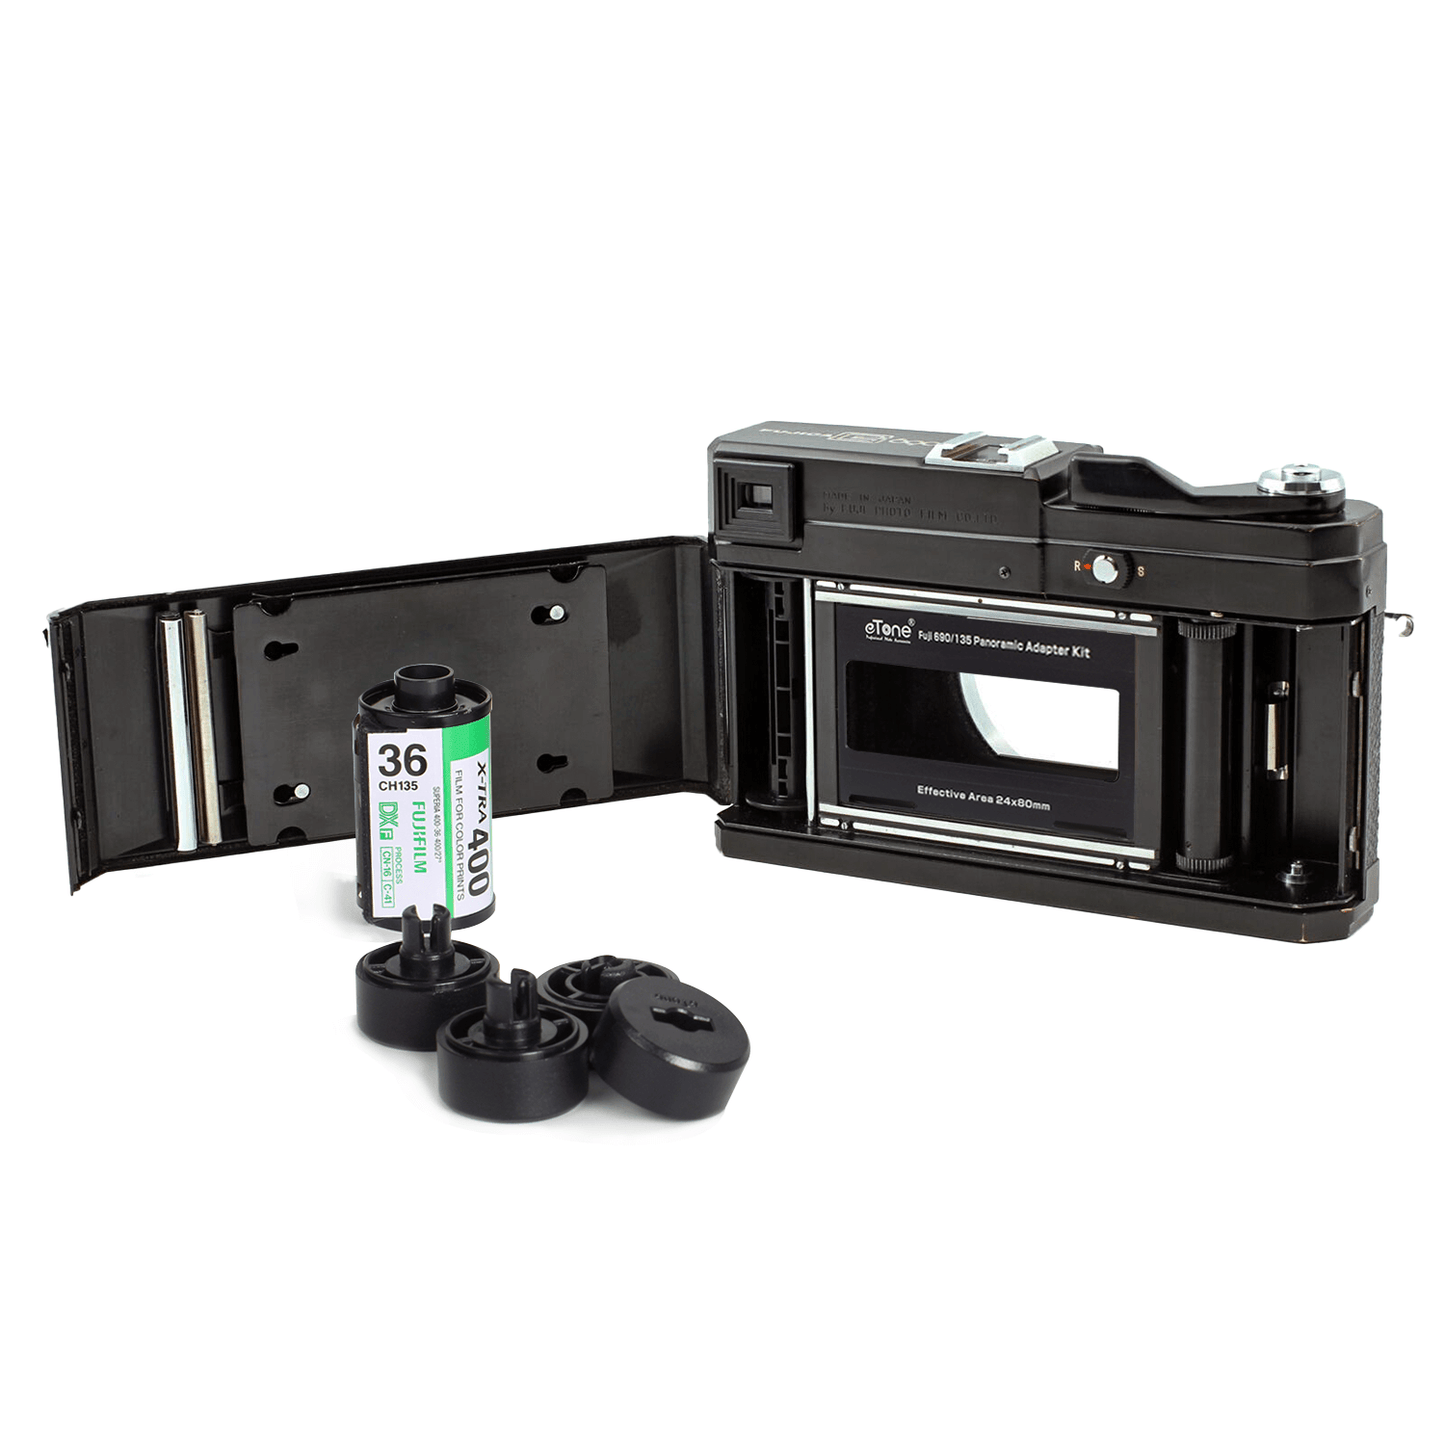 Nuovo kit adattatore per fotocamera Fujifilm 690 6x9 da 120 a 135 pellicole per pellicole di medio formato